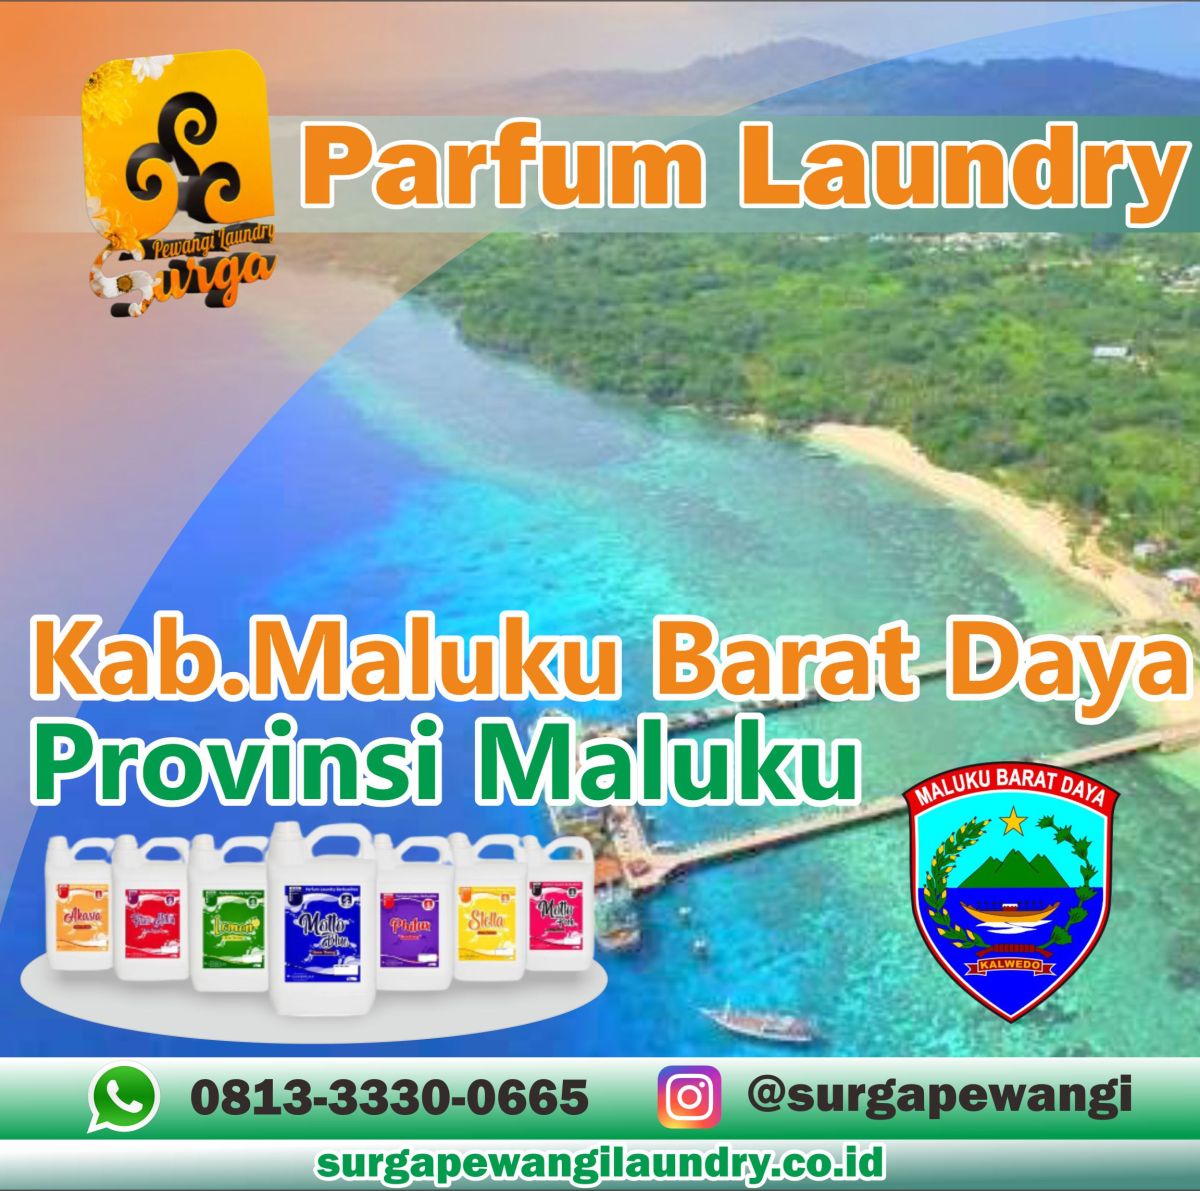 Parfum Laundry Kabupaten Maluku Barat Daya, Maluku